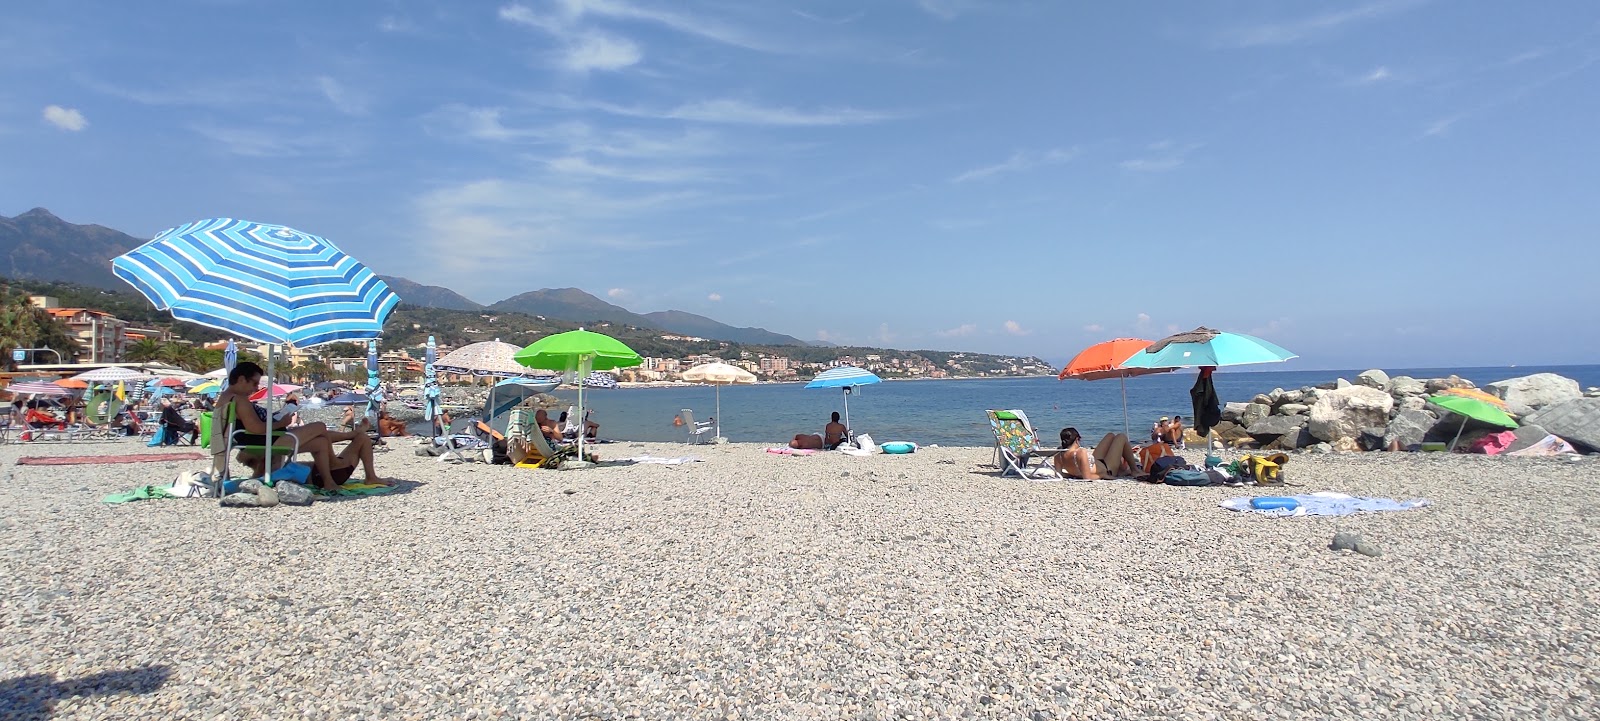 Valokuva Spiaggia Libera Carretta Cogoletoista. sisältäen tilava ranta